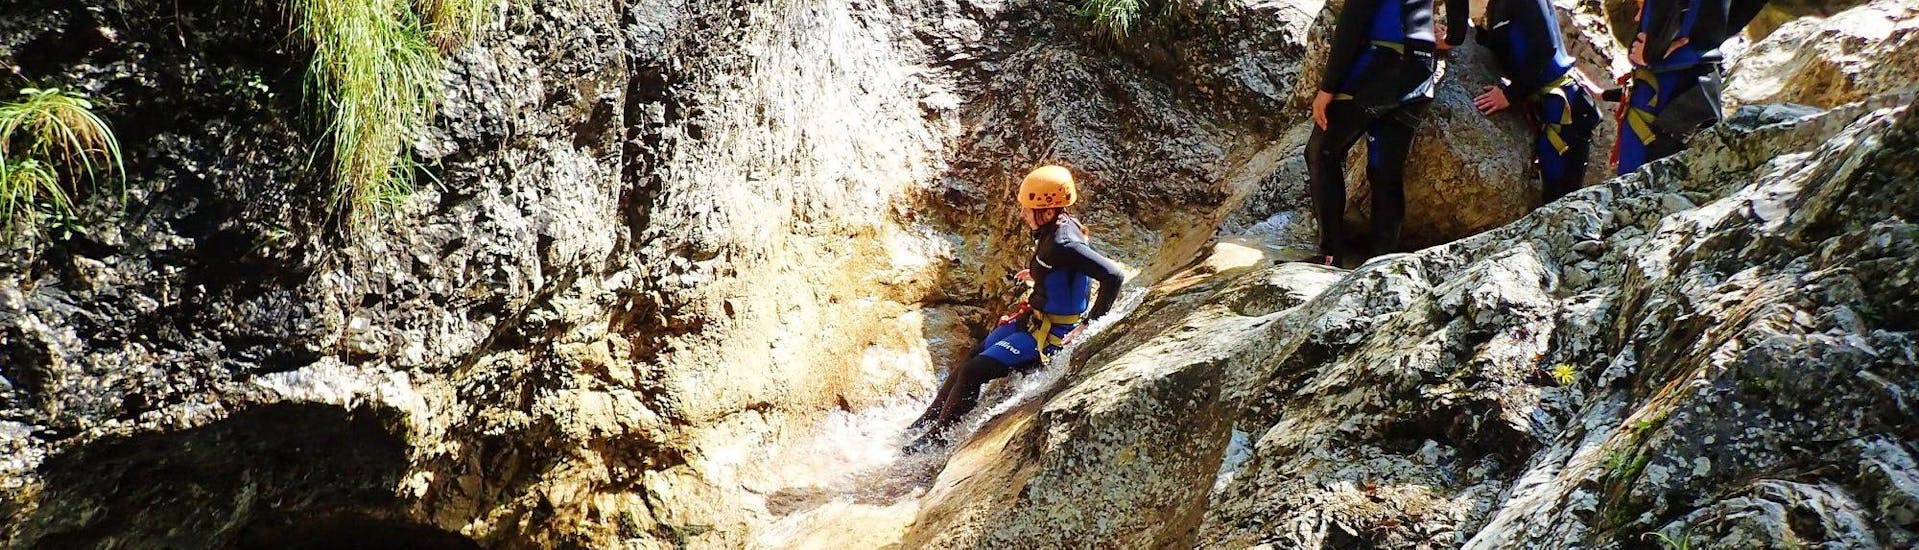 Photo du canyoning classique dans les gorges de Sušec près de Bovec avec Soča Rafting.